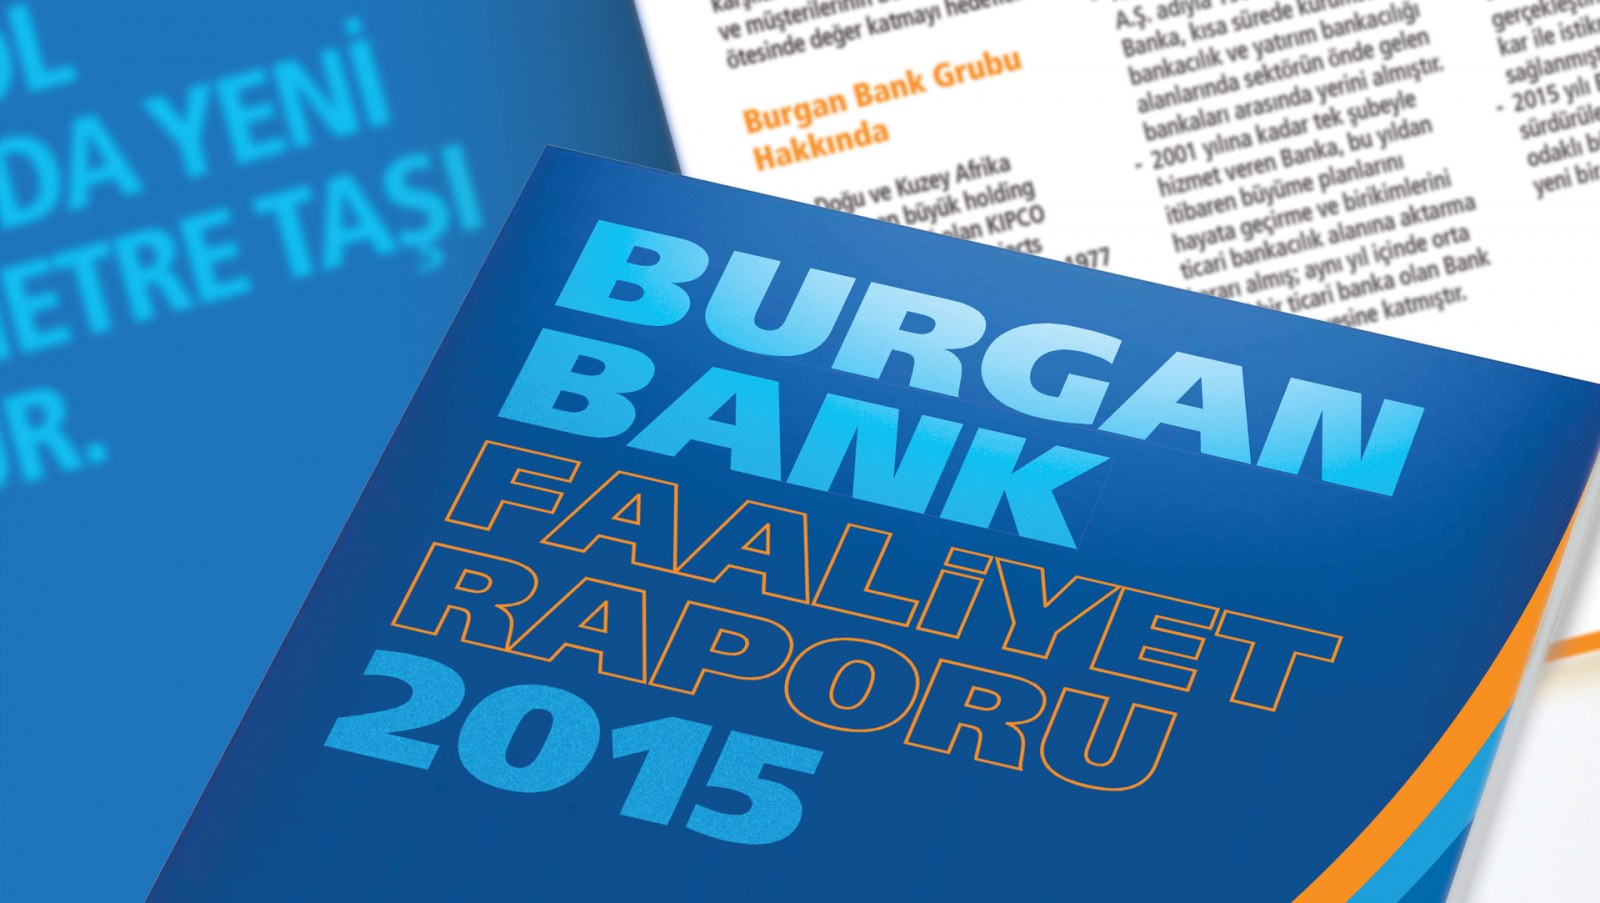 BURGAN BANK / 2015 Faaliyet Raporu / 2015 Annual Report